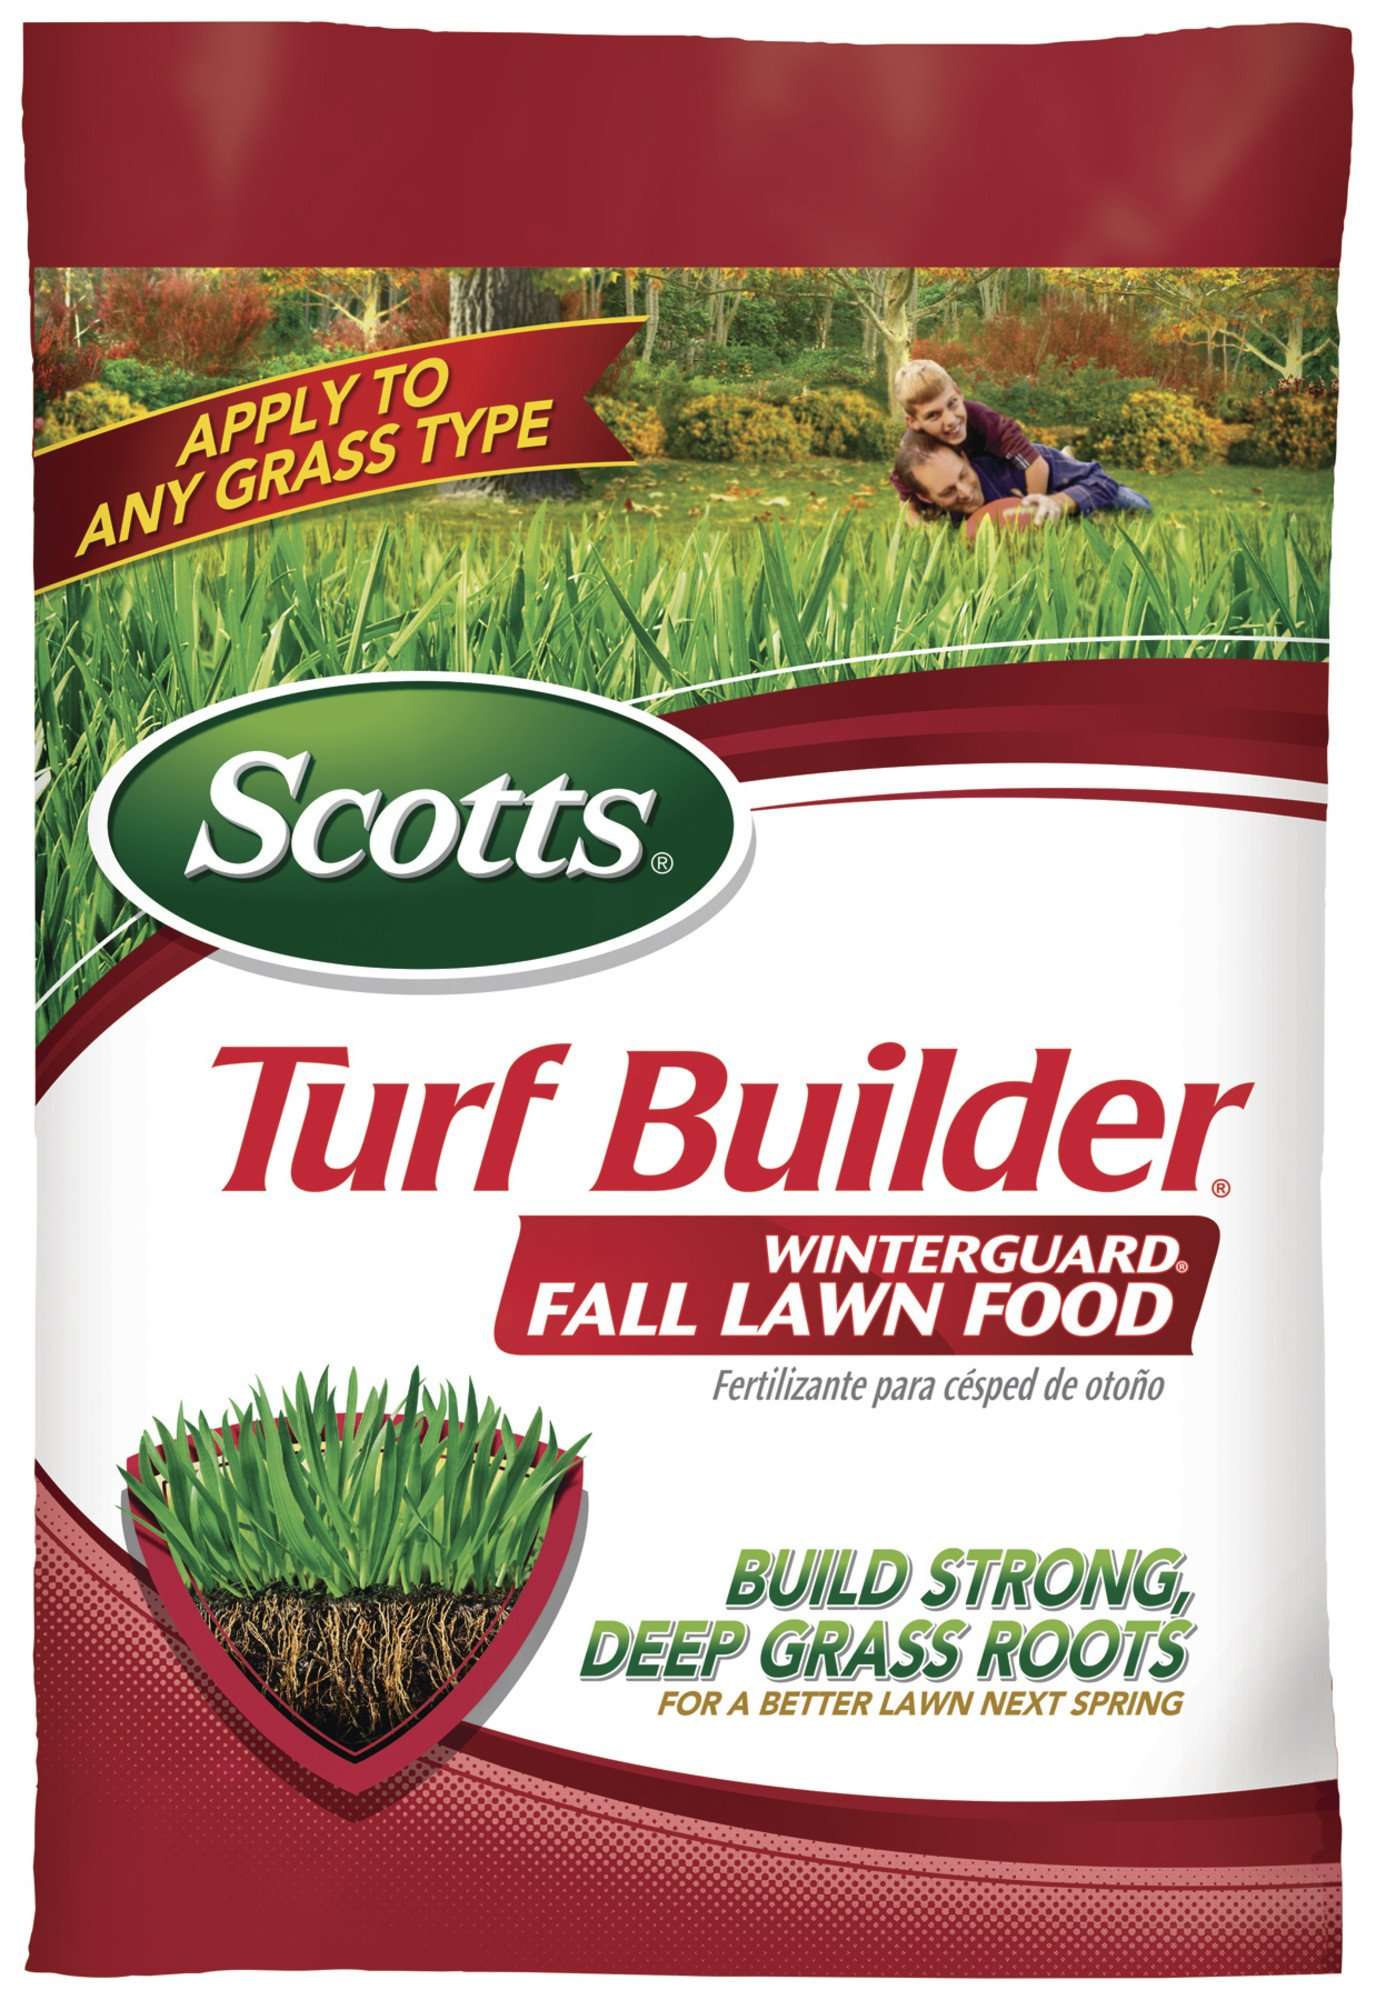 Scotts Turf Builder Winterguard Fall Lawn Food, 12.5 lbs ...